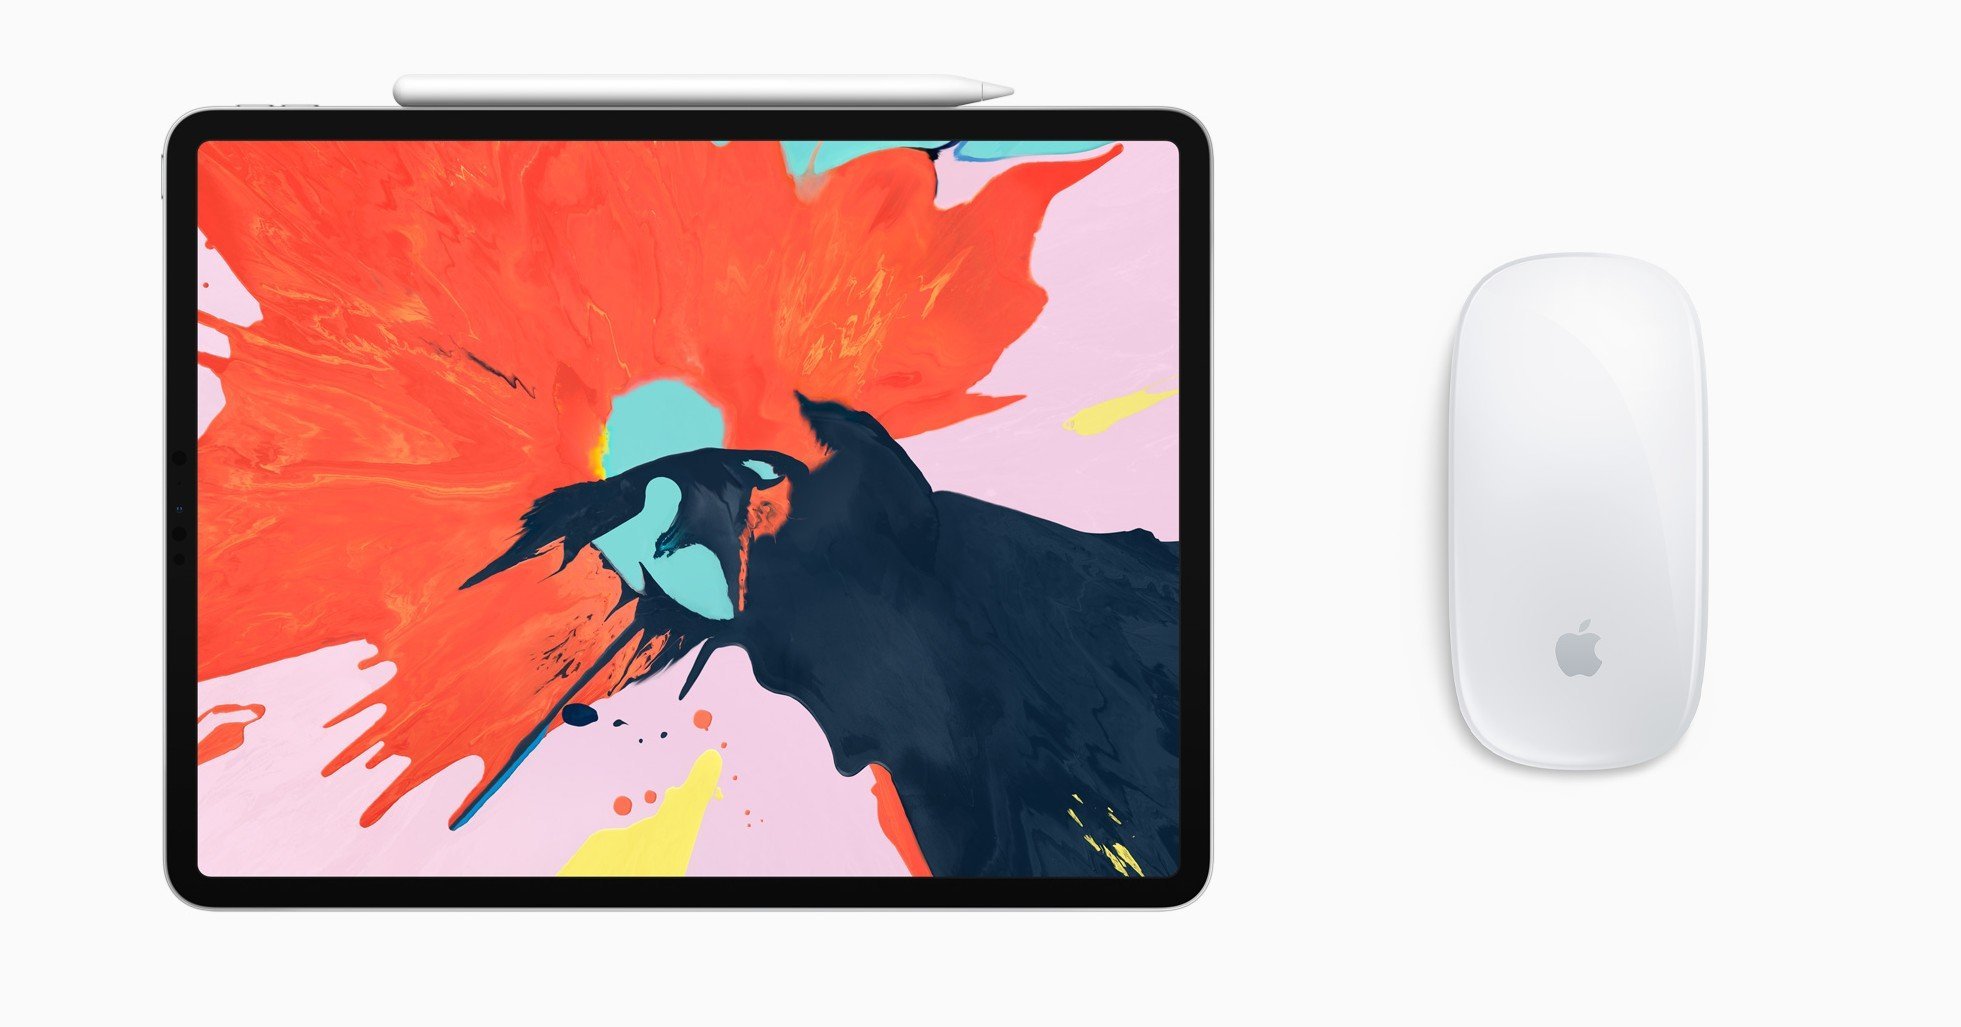 iPad Pro and Magic Mouse